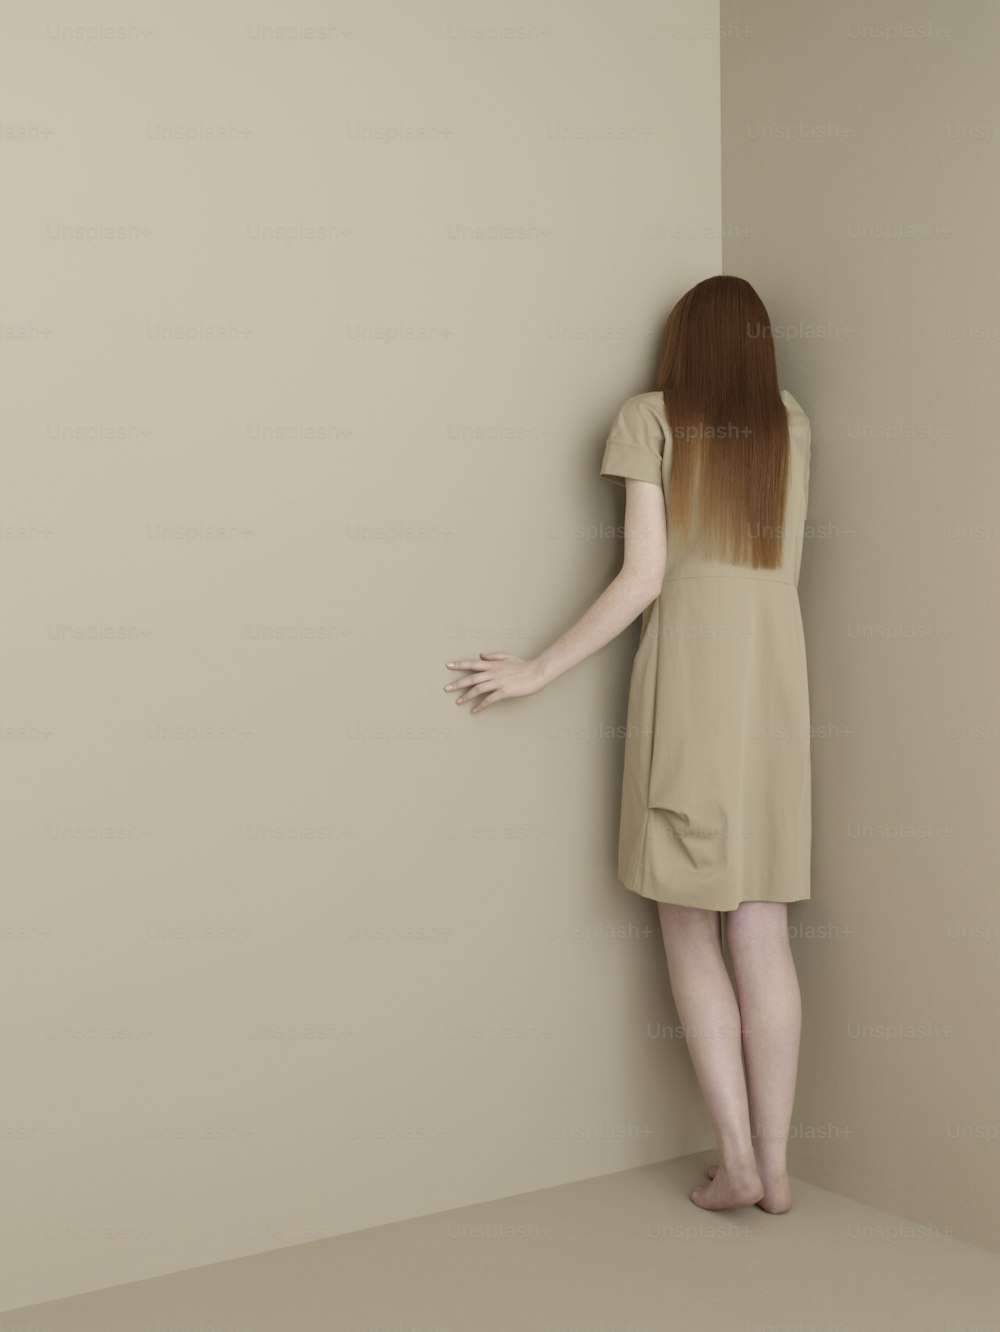 短いドレス�を着た女性が壁にもたれかかっている